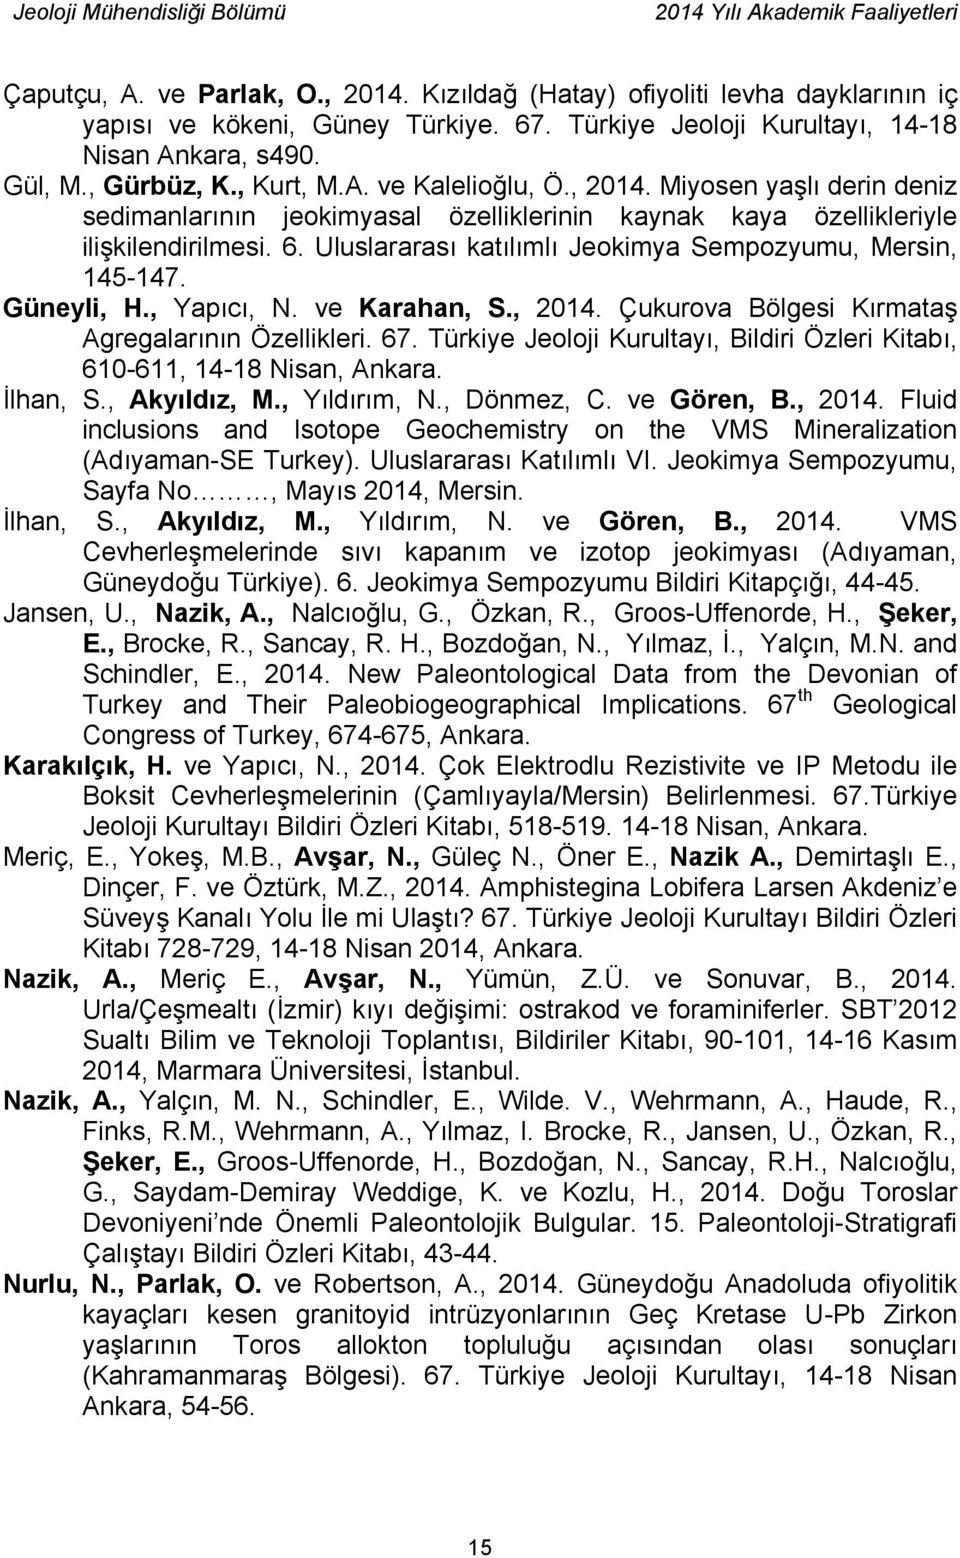 Uluslararası katılımlı Jeokimya Sempozyumu, Mersin, 145-147. Güneyli, H., Yapıcı, N. ve Karahan, S., 2014. Çukurova Bölgesi Kırmataş Agregalarının Özellikleri. 67.